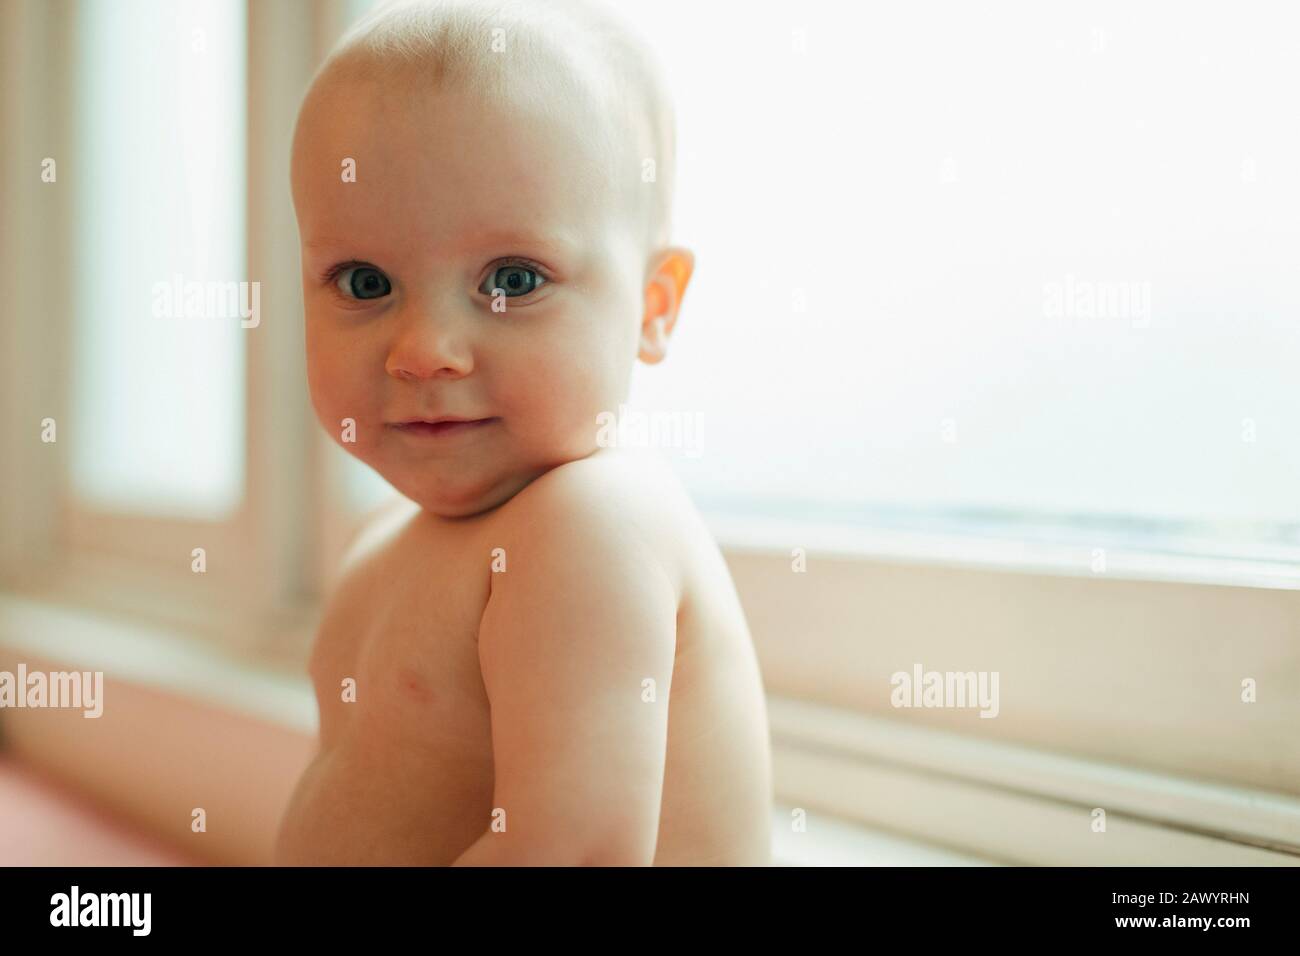 Portrait cute baby girl in window Stock Photo